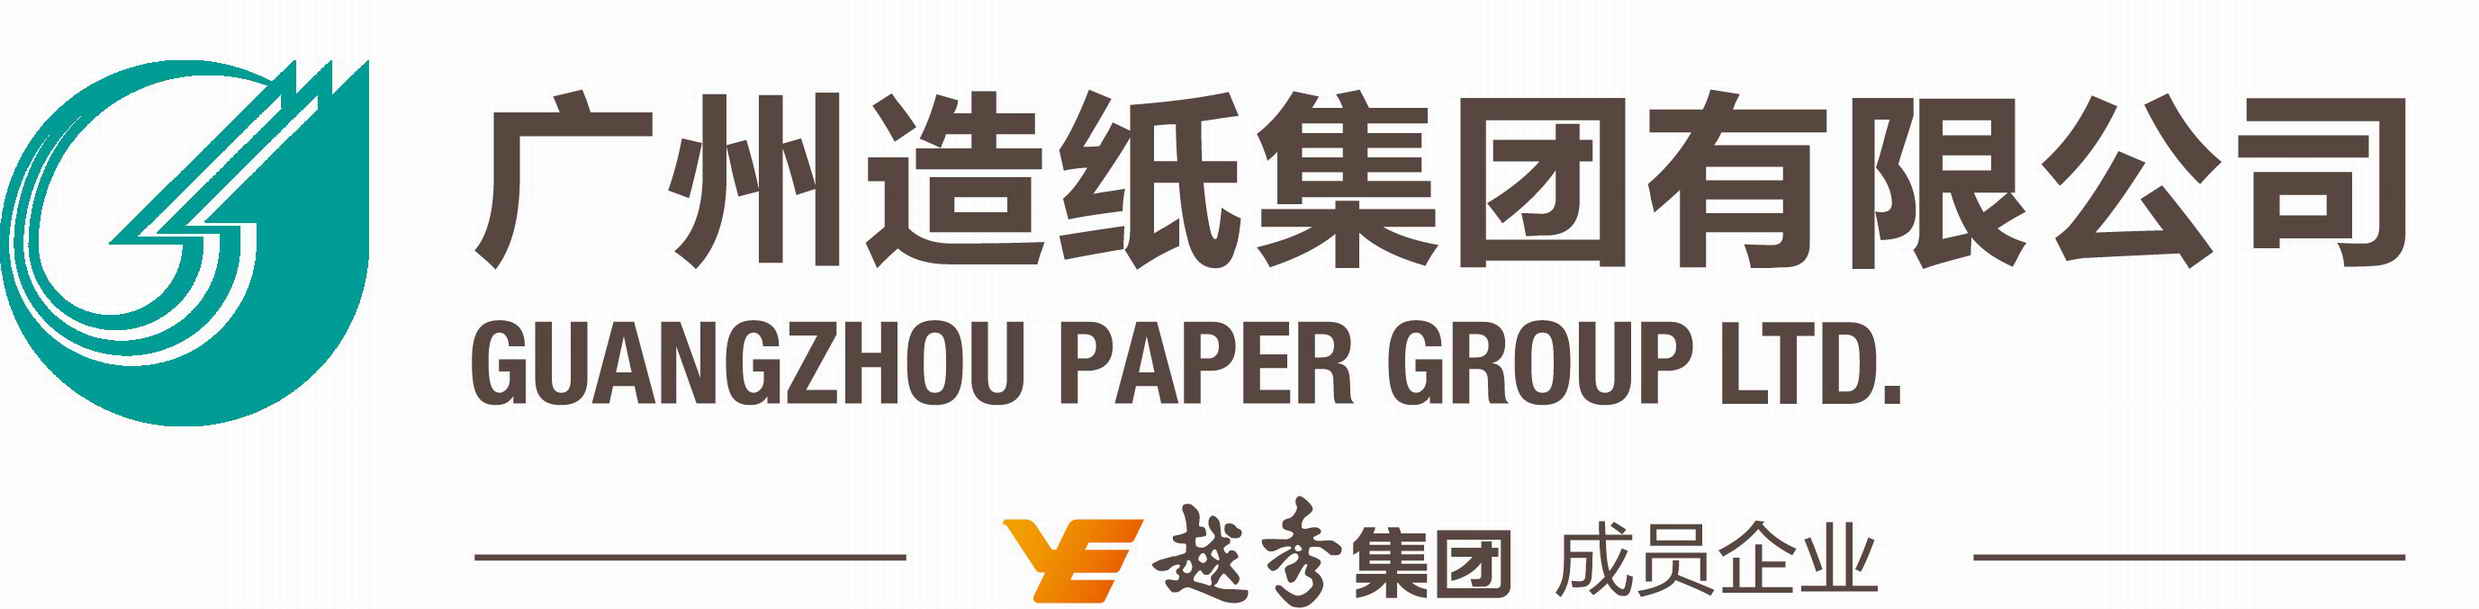 广州造纸集团